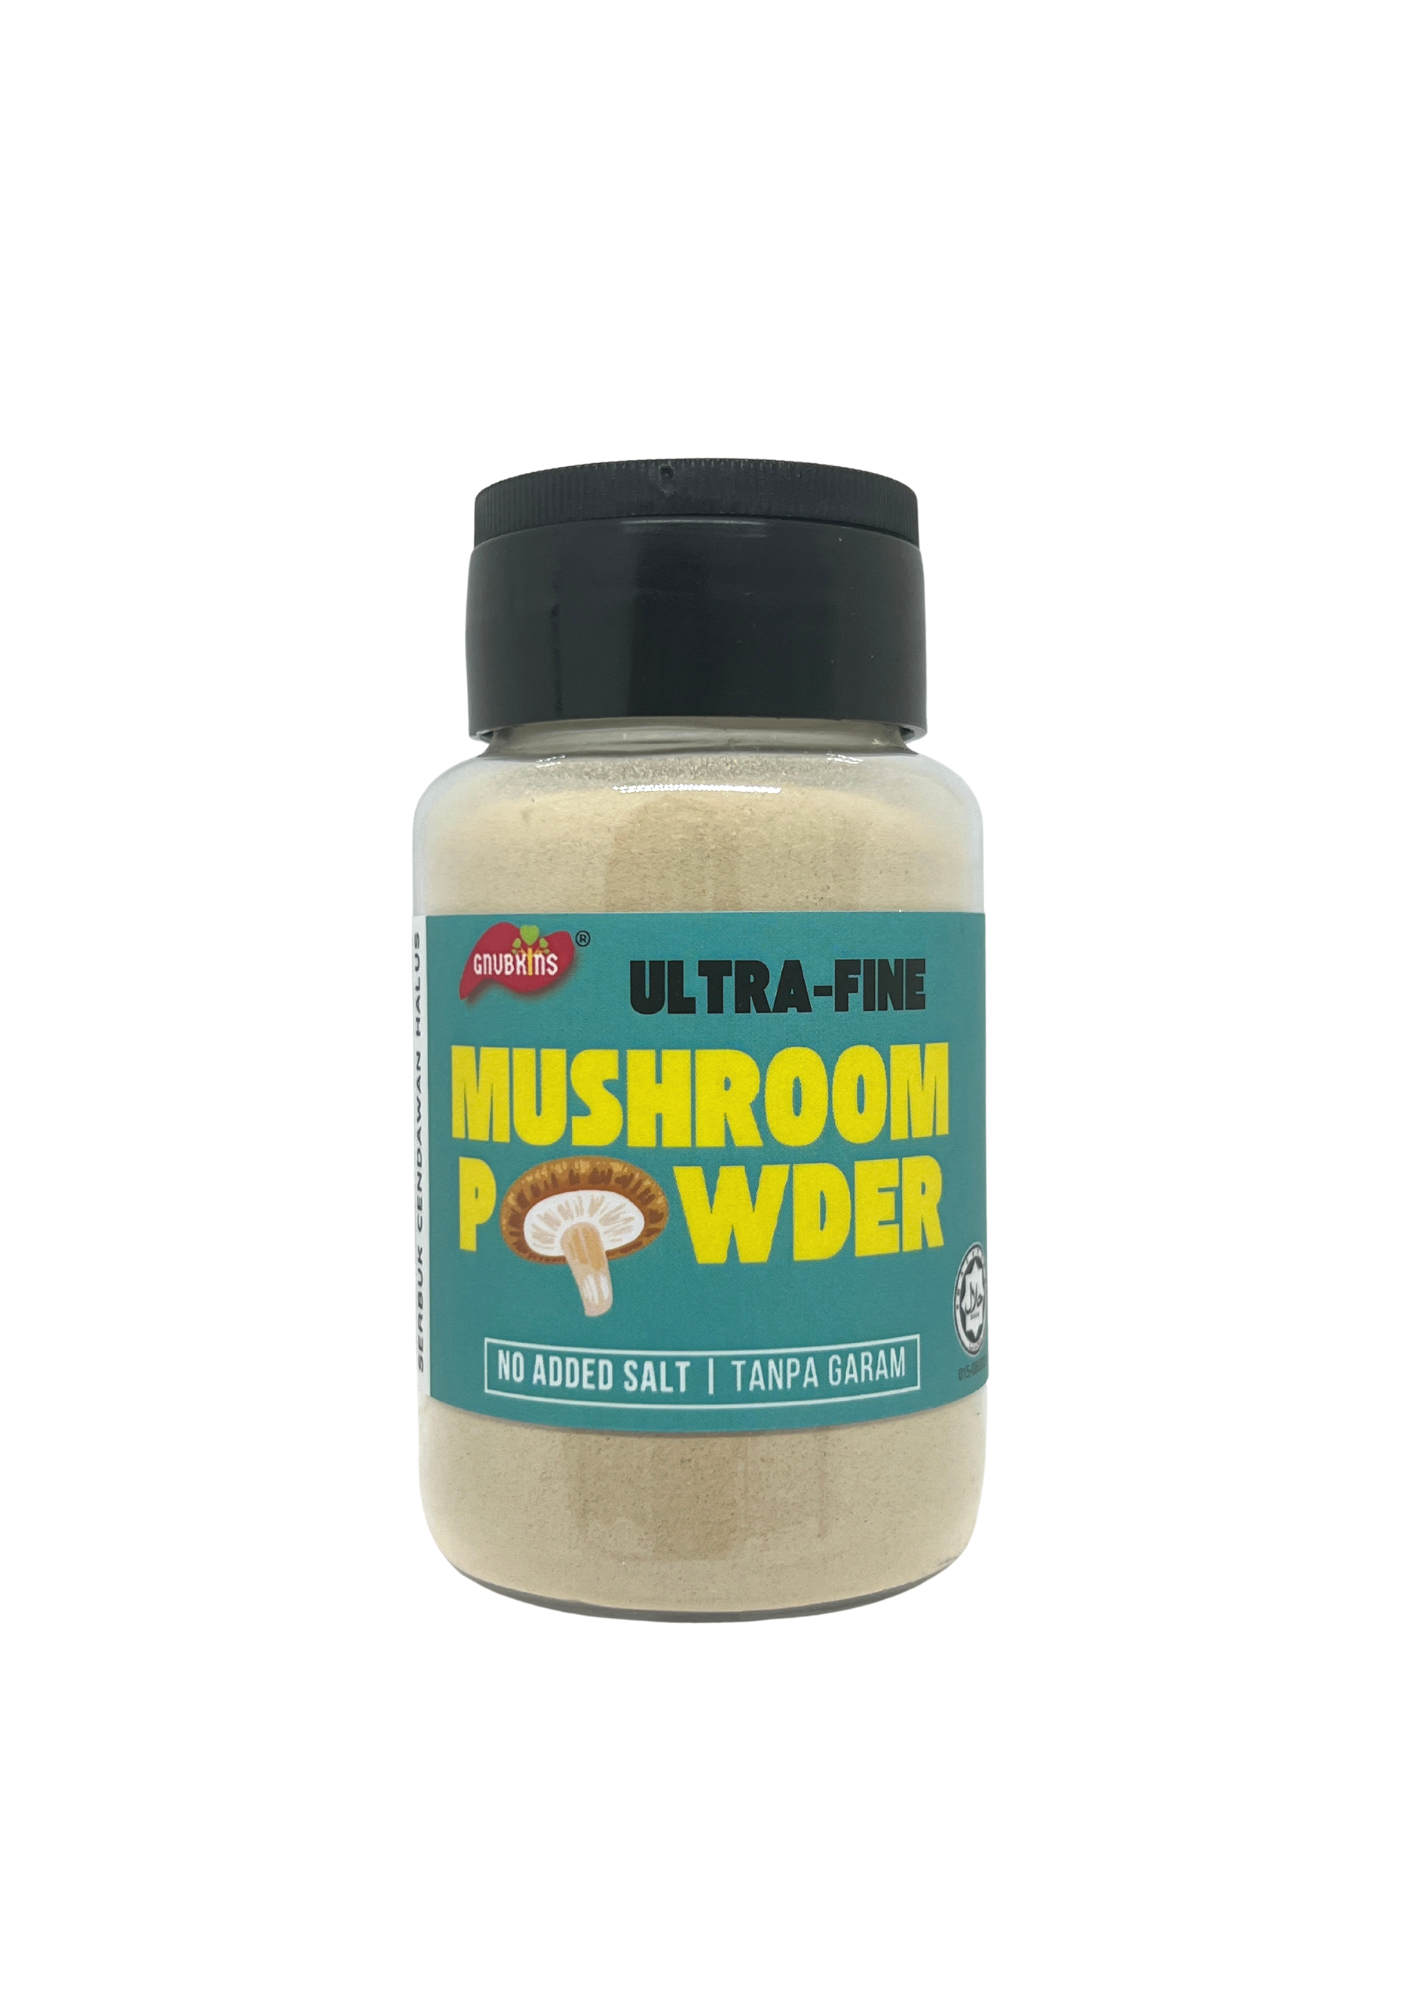 Little Baby Grains: Mushroom Powder (6+ months)